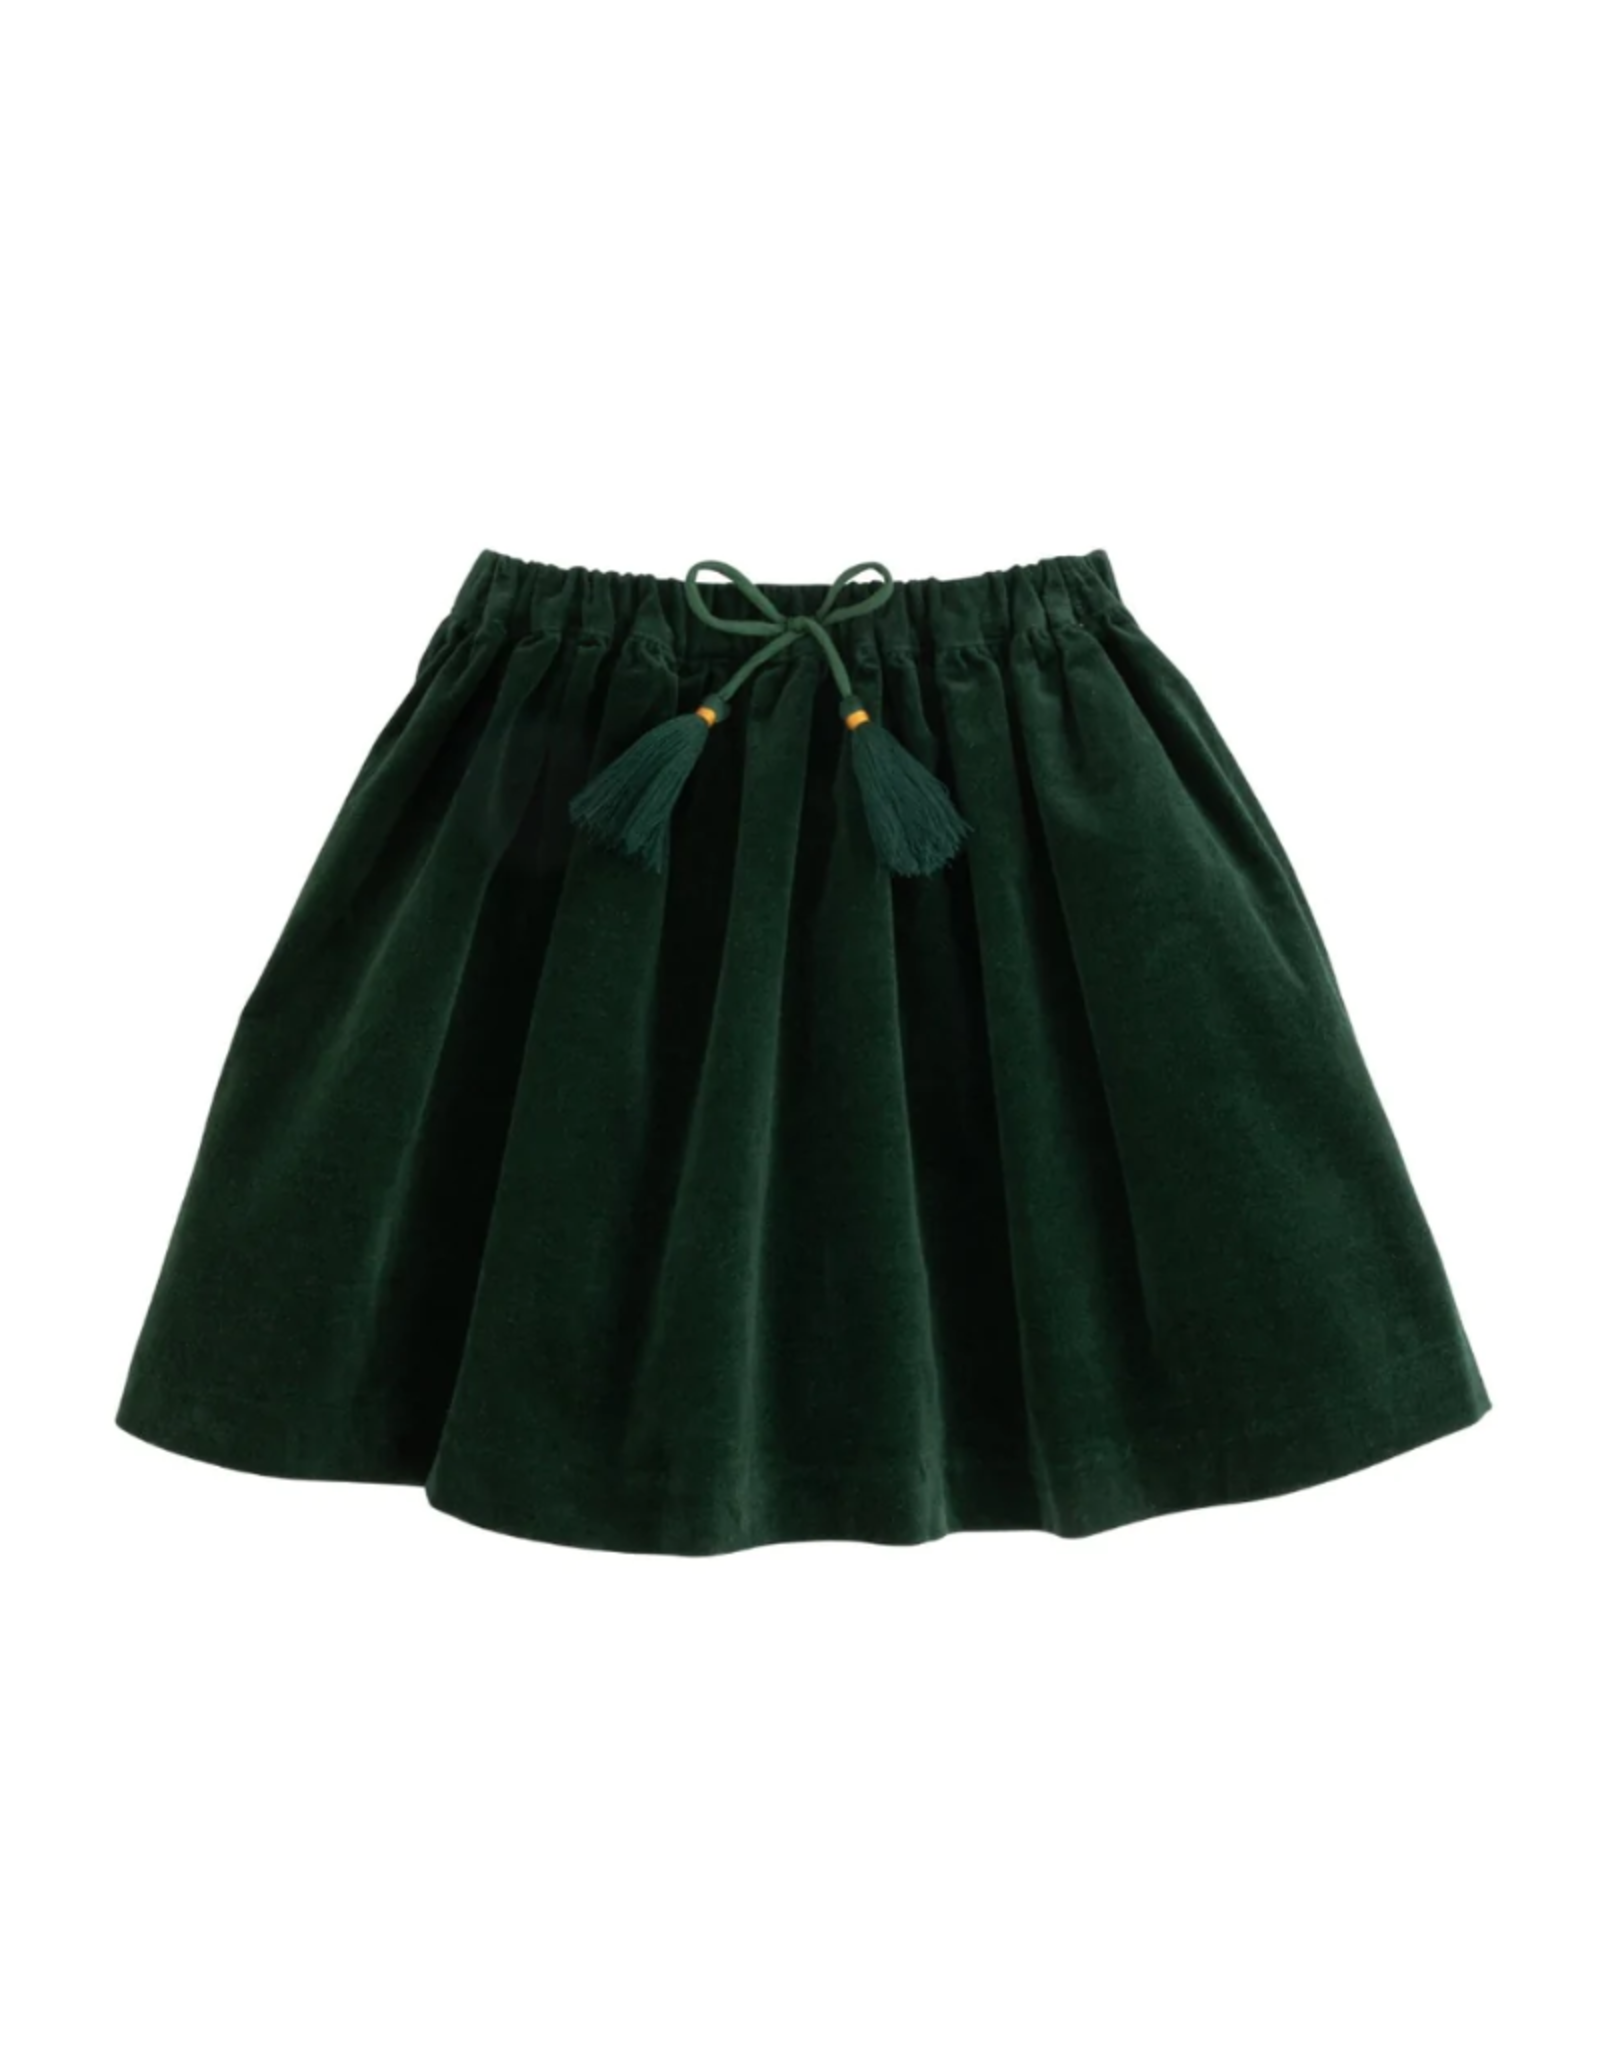 Bisby Circle Skirt Emerald Velvet